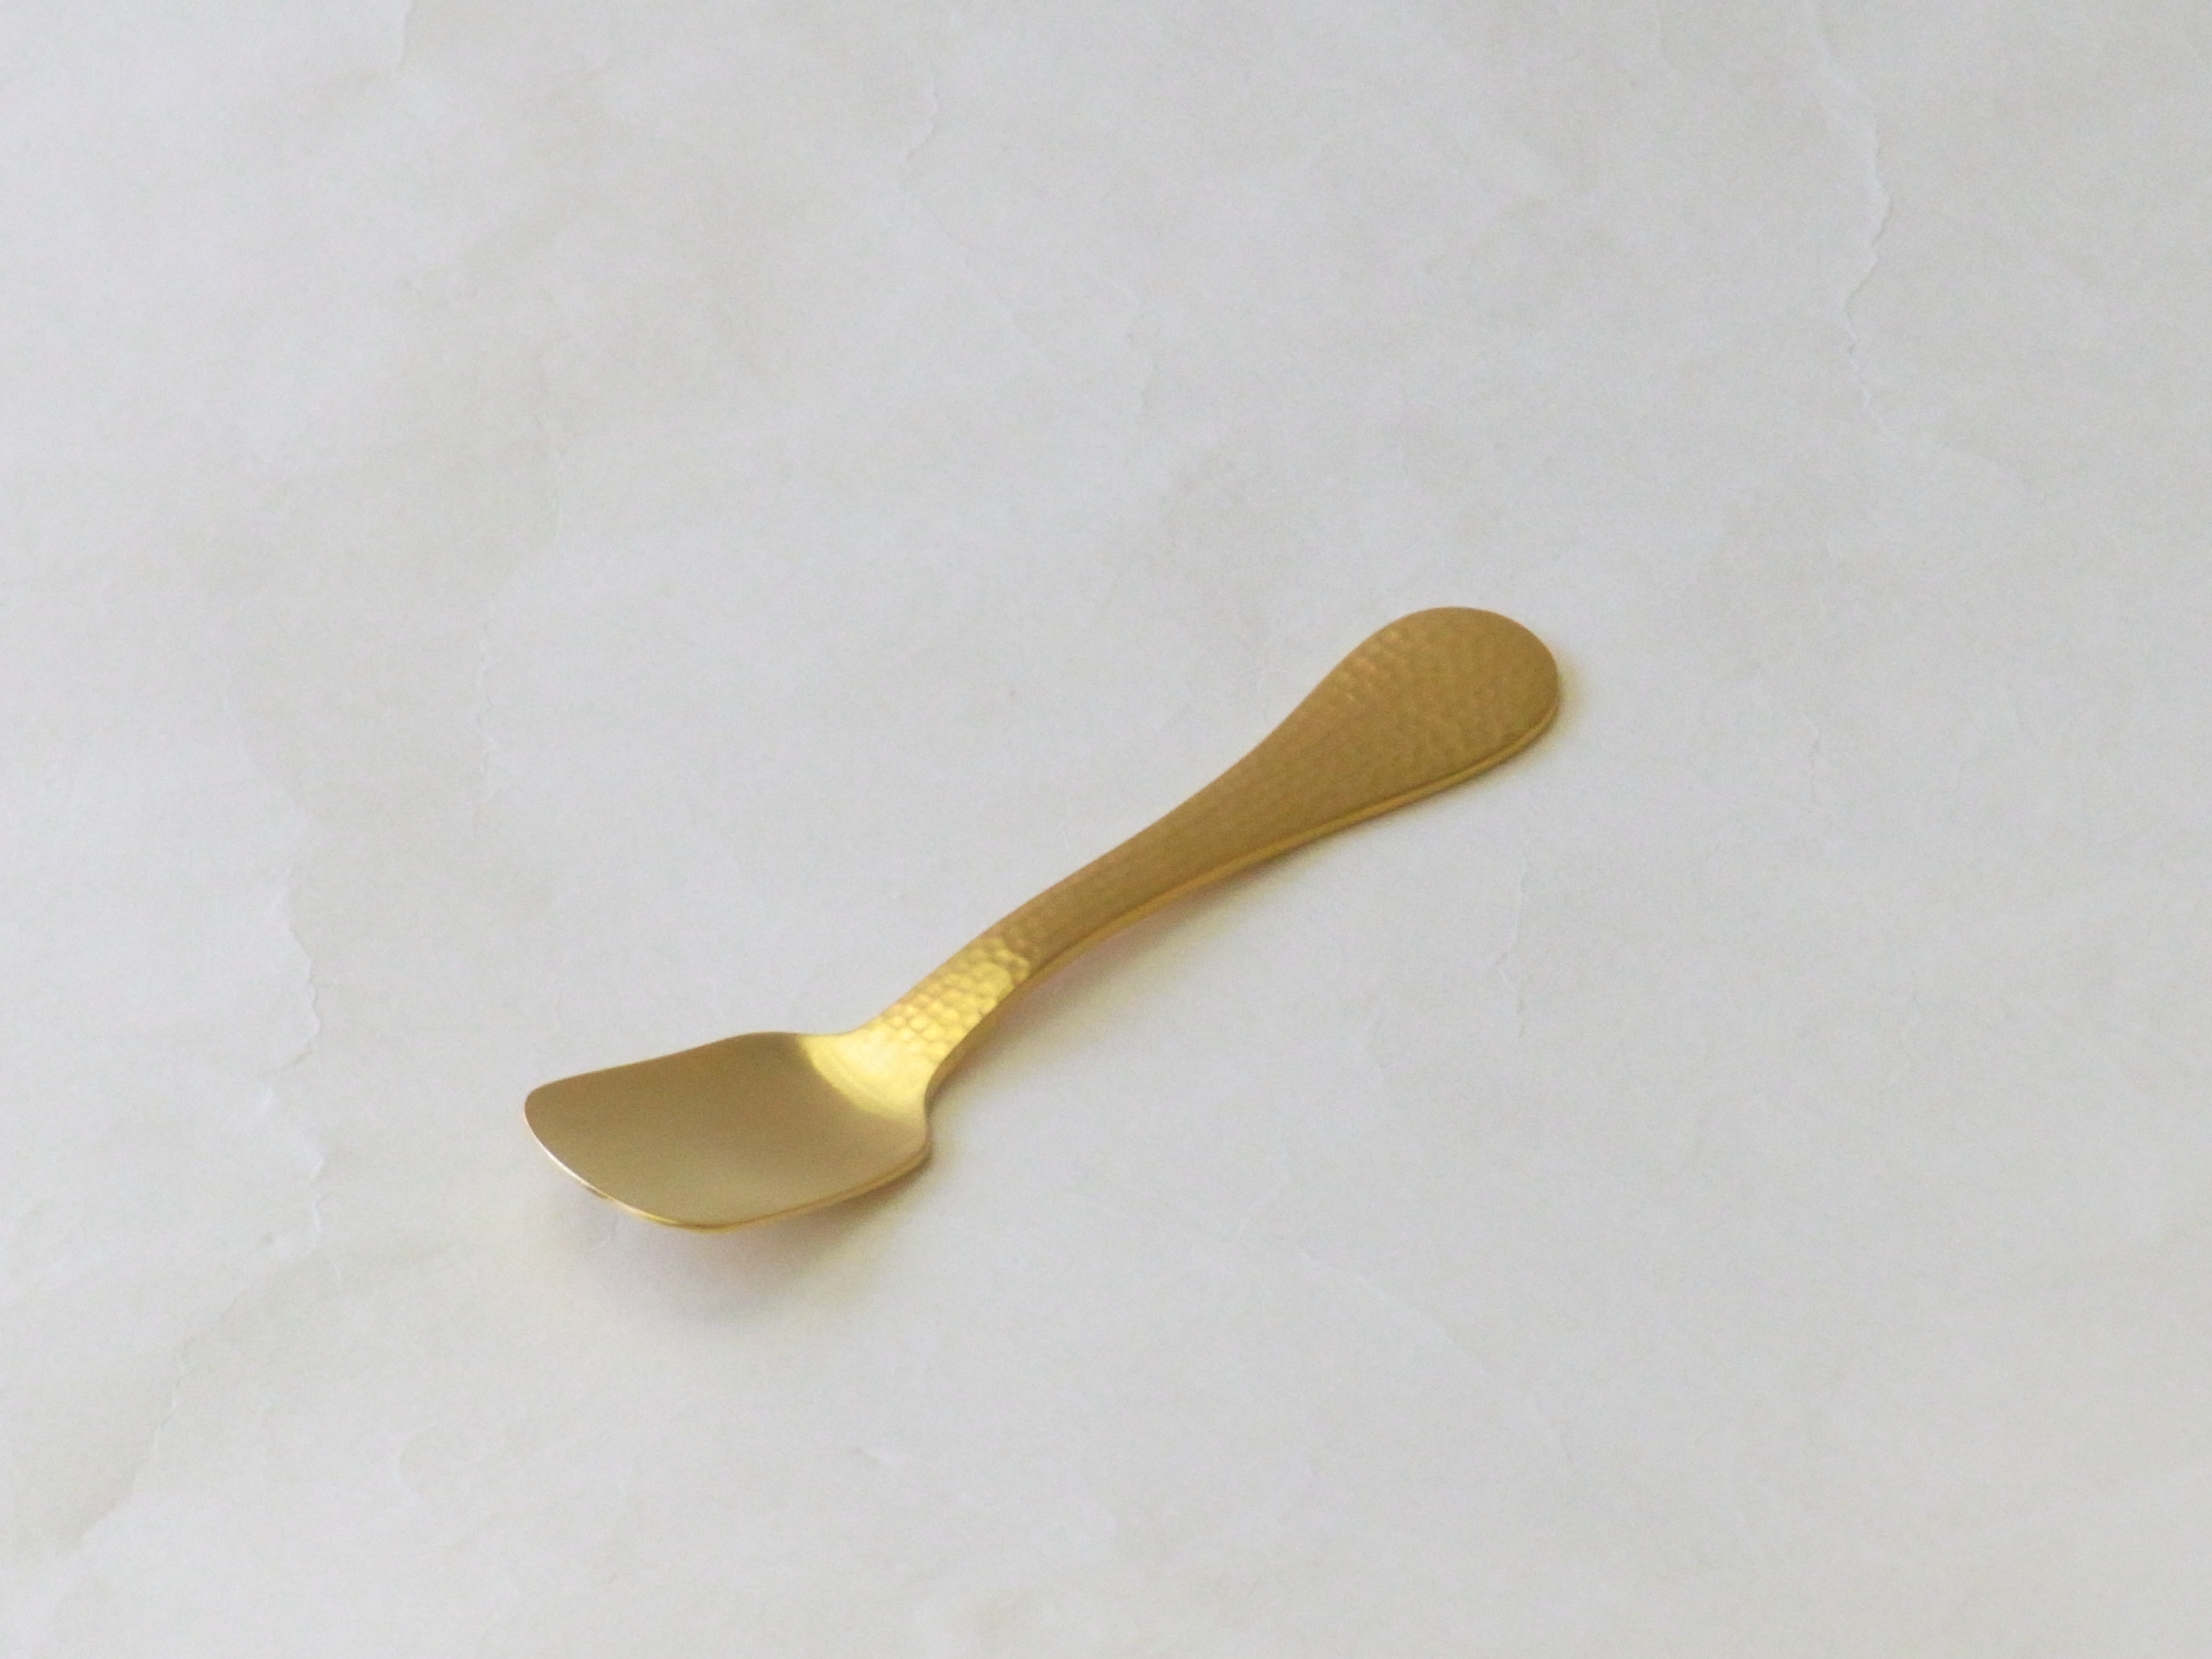 日本製 純銅 アイスクリーム専用スプーン 槌目 金メッキ | 小林漆陶 映える器ギャラリー 岐阜市| 日本一の漆陶器 茶道具の品揃えと在庫